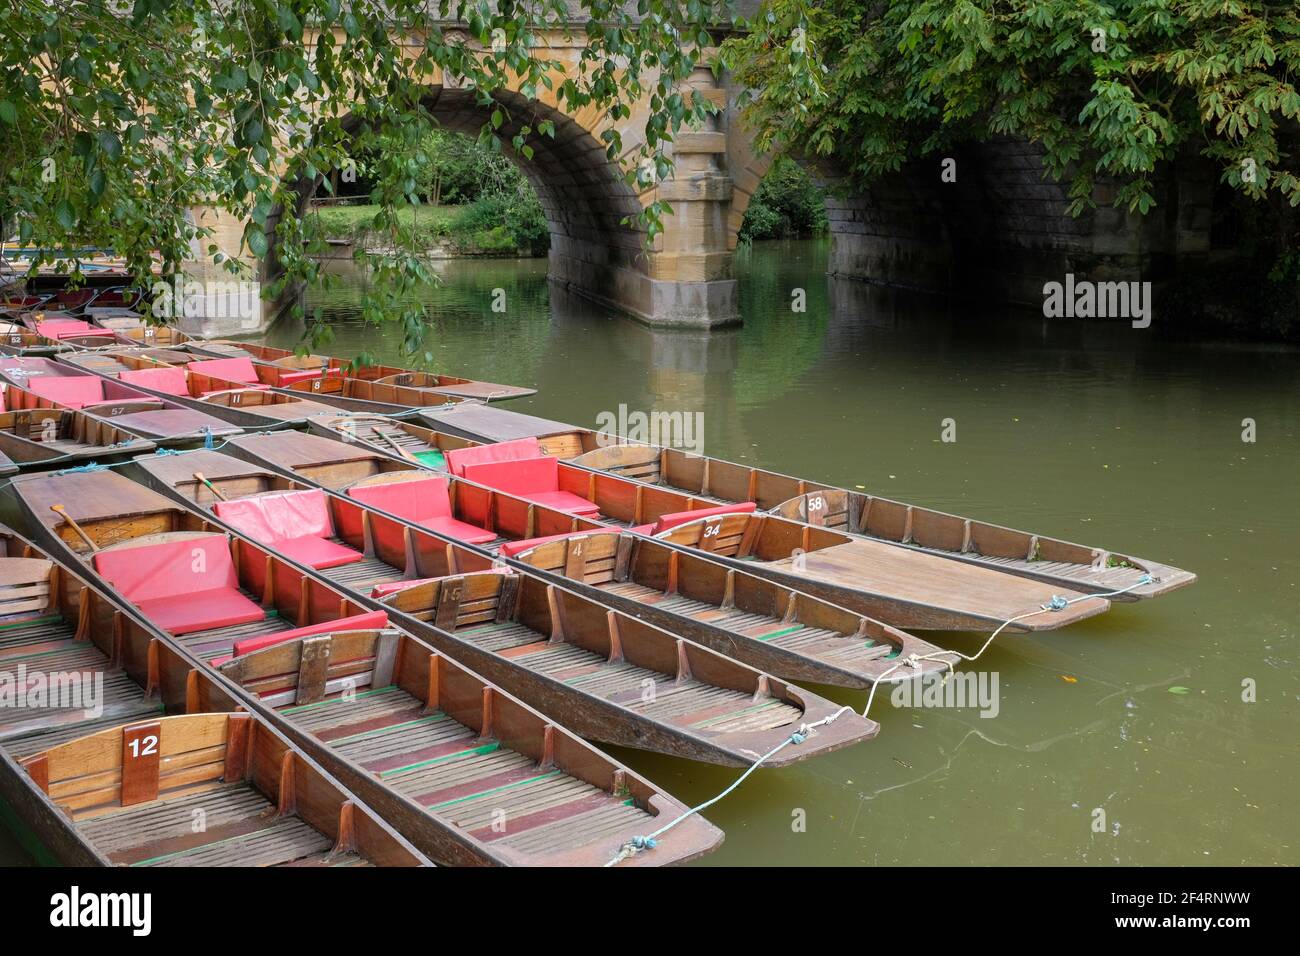 Punts à louer amarrés sur la rivière Cherwell, pont de Magdalenen, Oxford, Angleterre, Royaume-Uni Banque D'Images